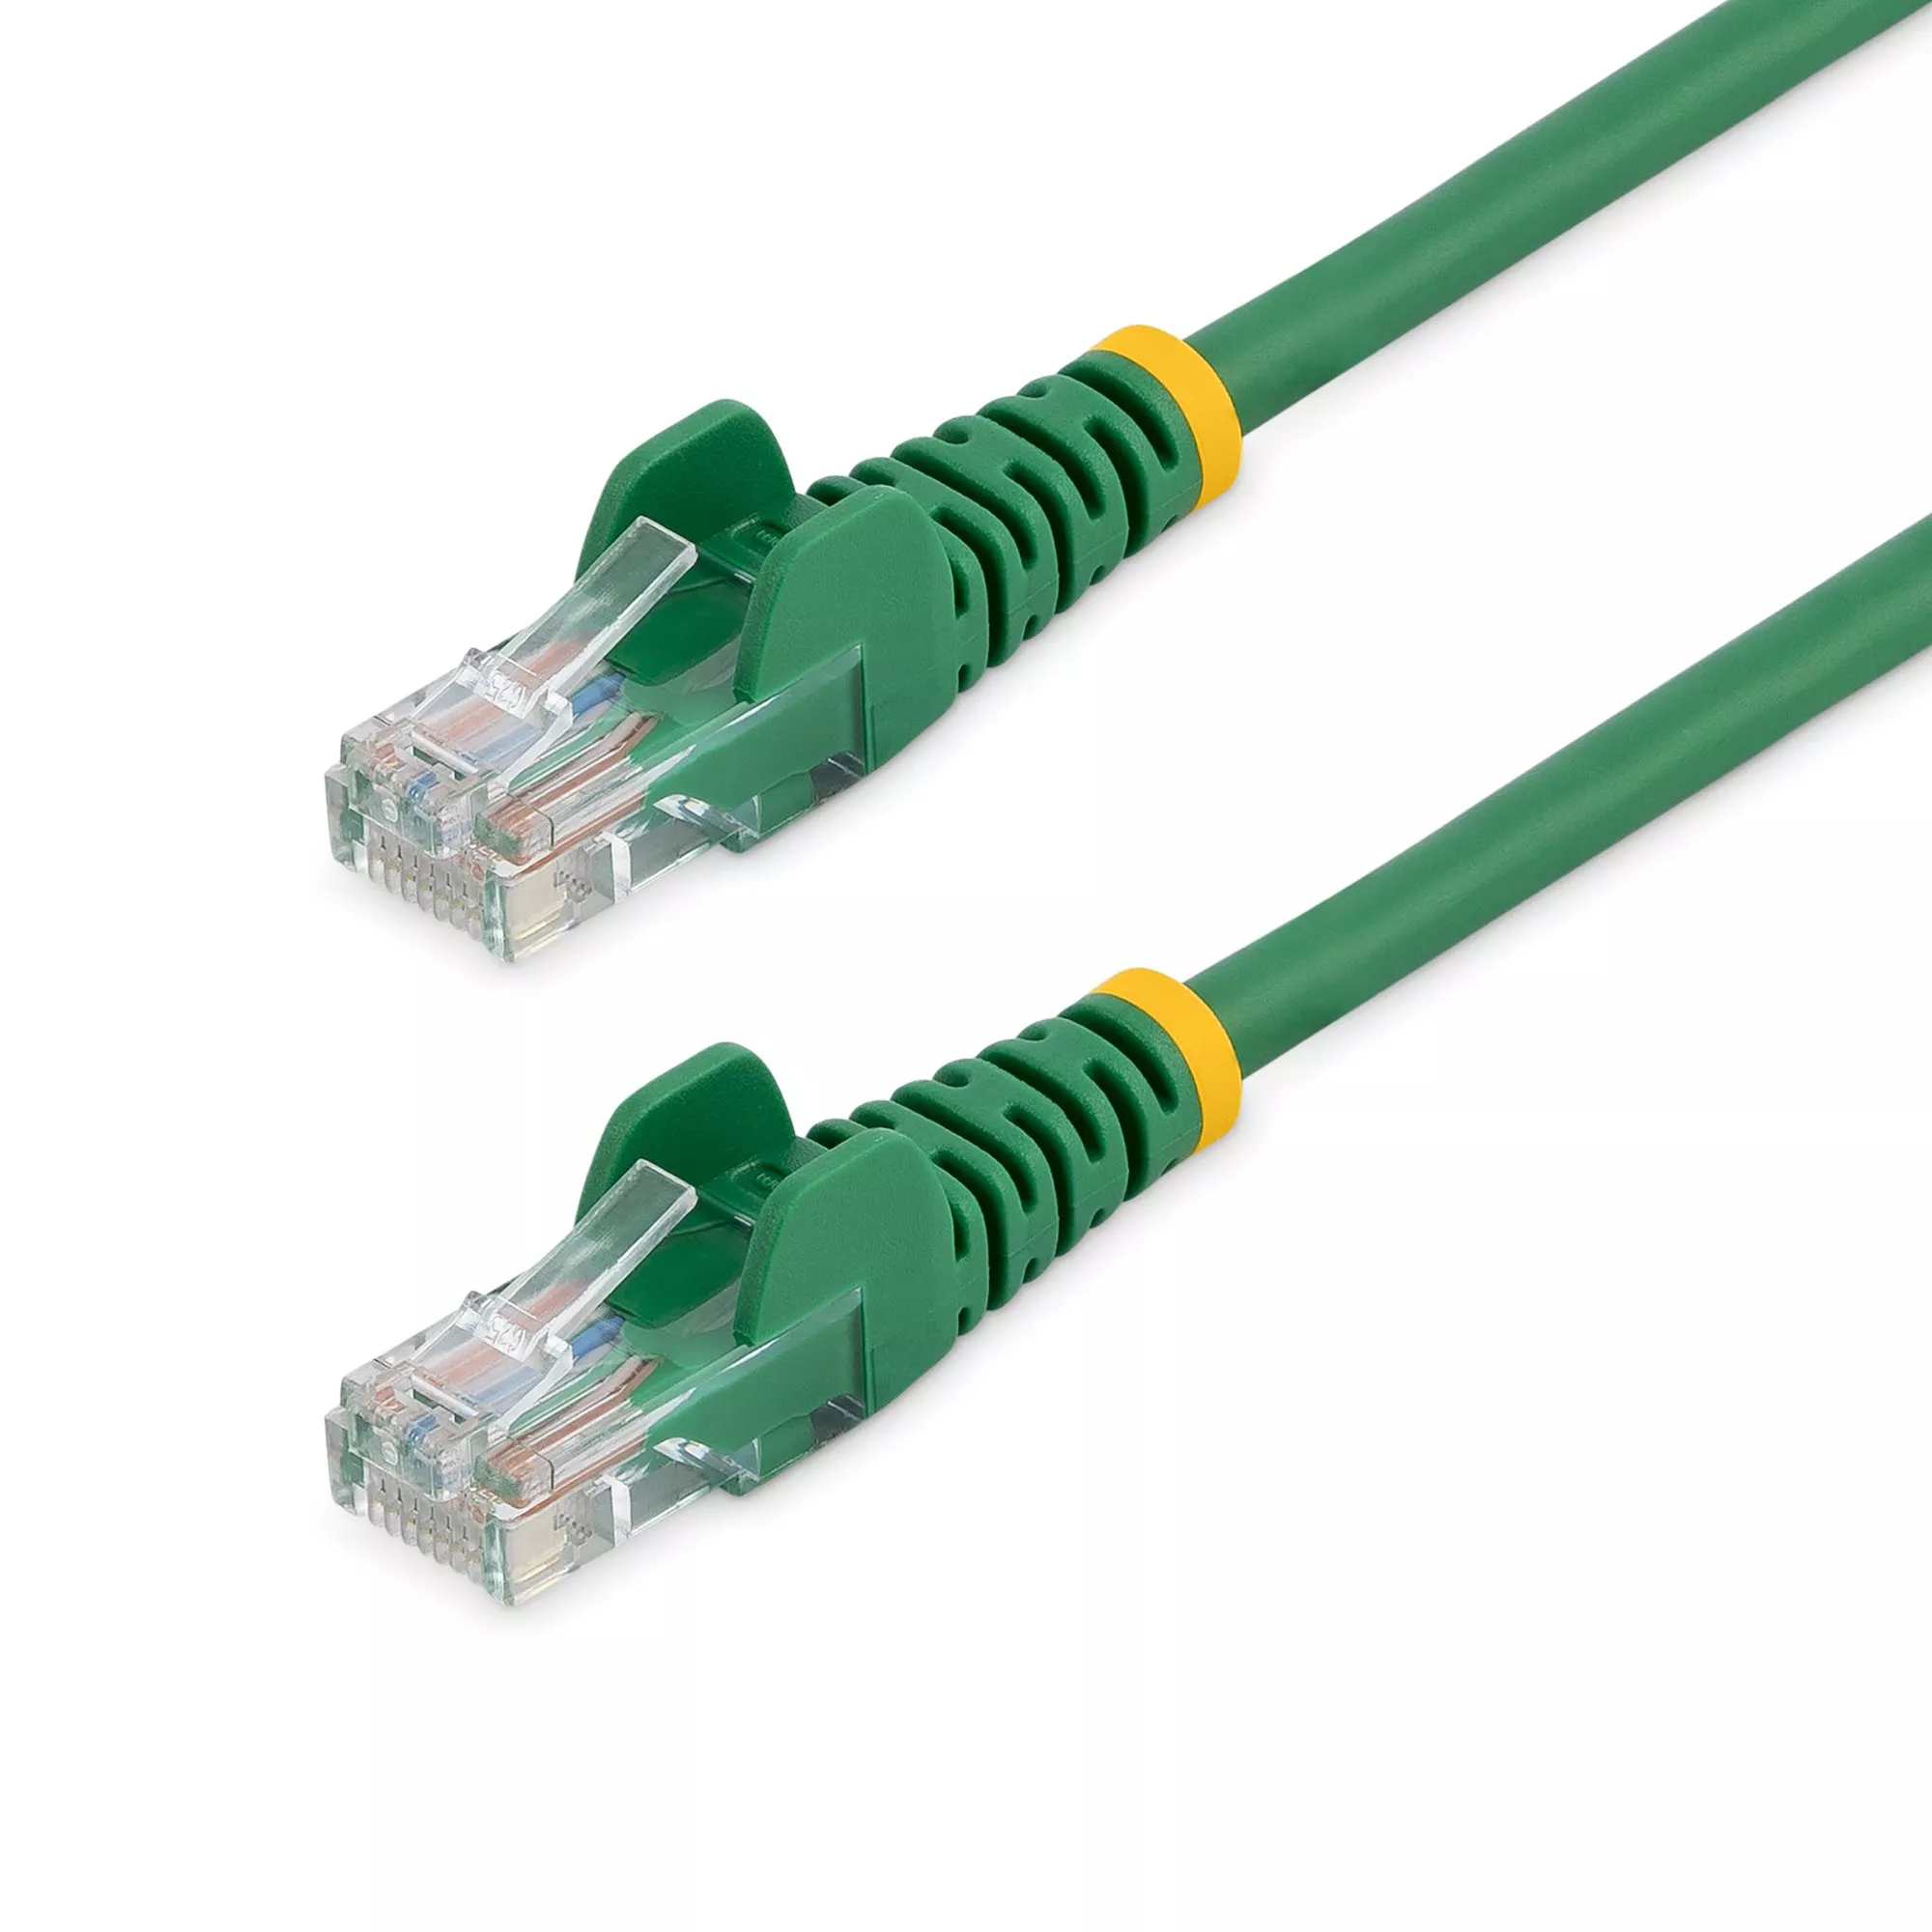 Achat StarTech.com Câble réseau Cat5e sans crochet de 5 m - Vert au meilleur prix